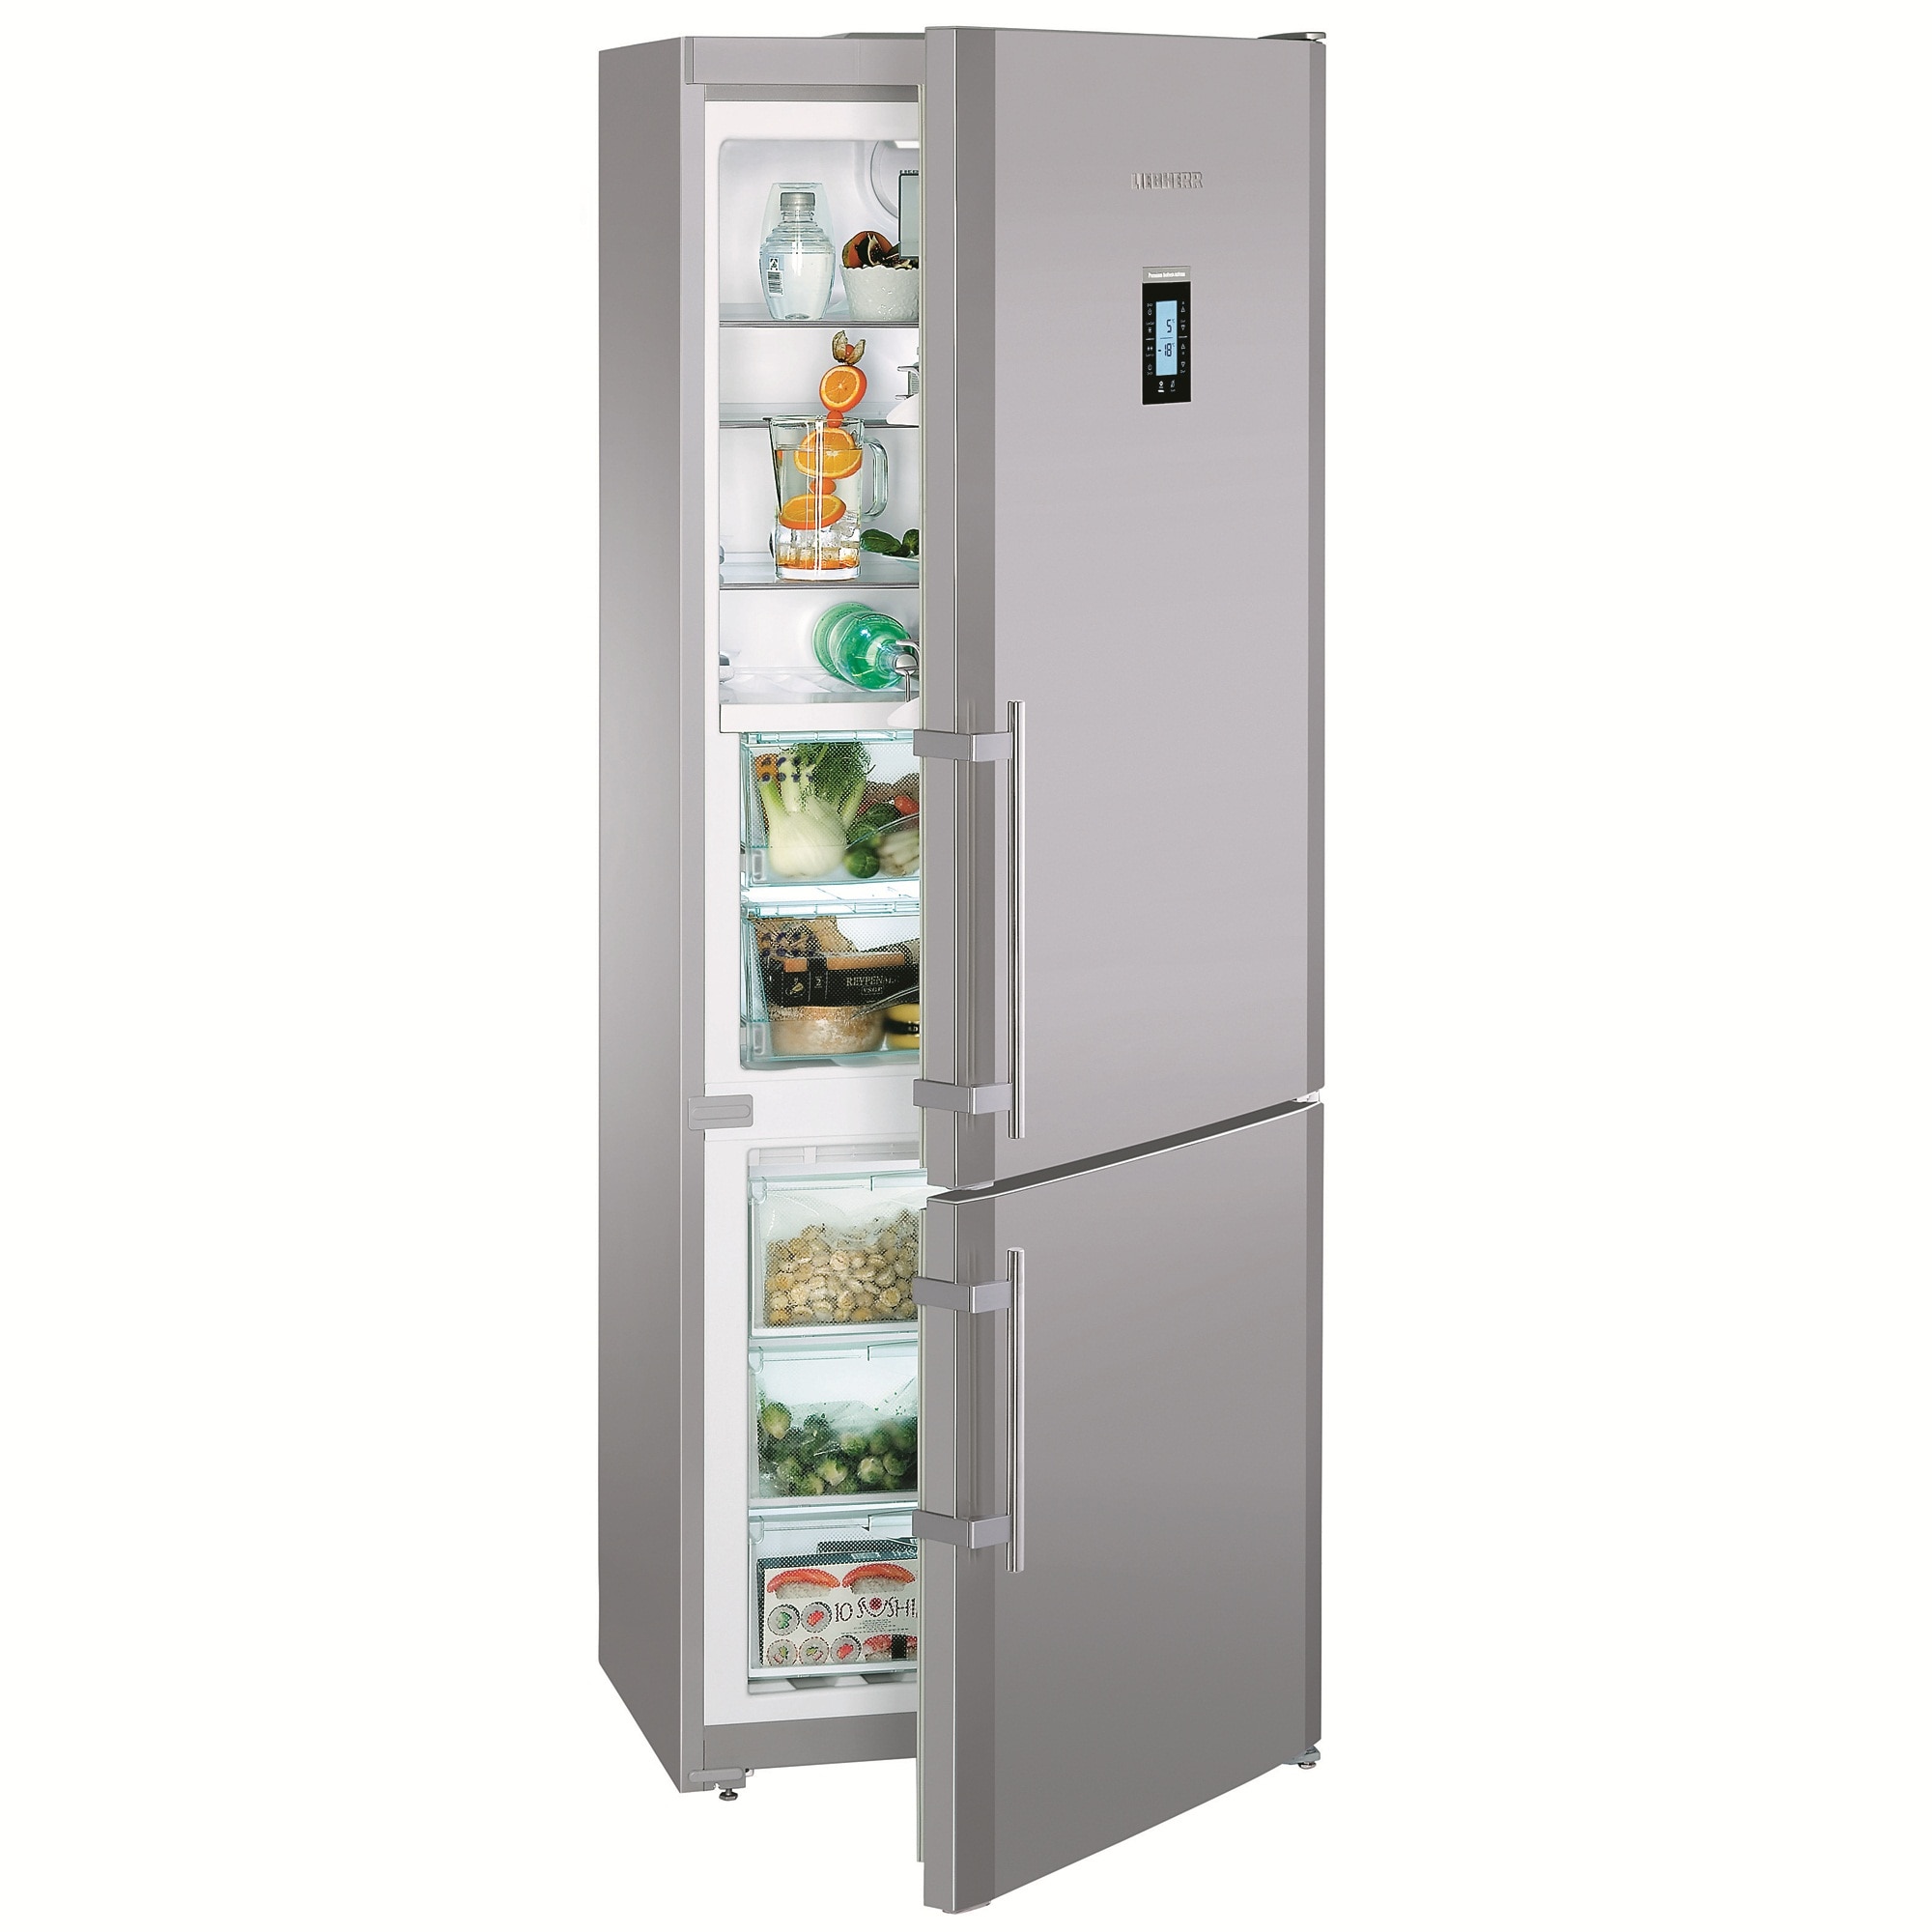 Купить холодильник в алматы. Холодильник Liebherr CNPESF 5156. Холодильник Liebherr CNPES 5156. Холодильник Liebherr CNPESF 5156, серебристый. Liebherr холодильники CNPESF 5156-21 001.